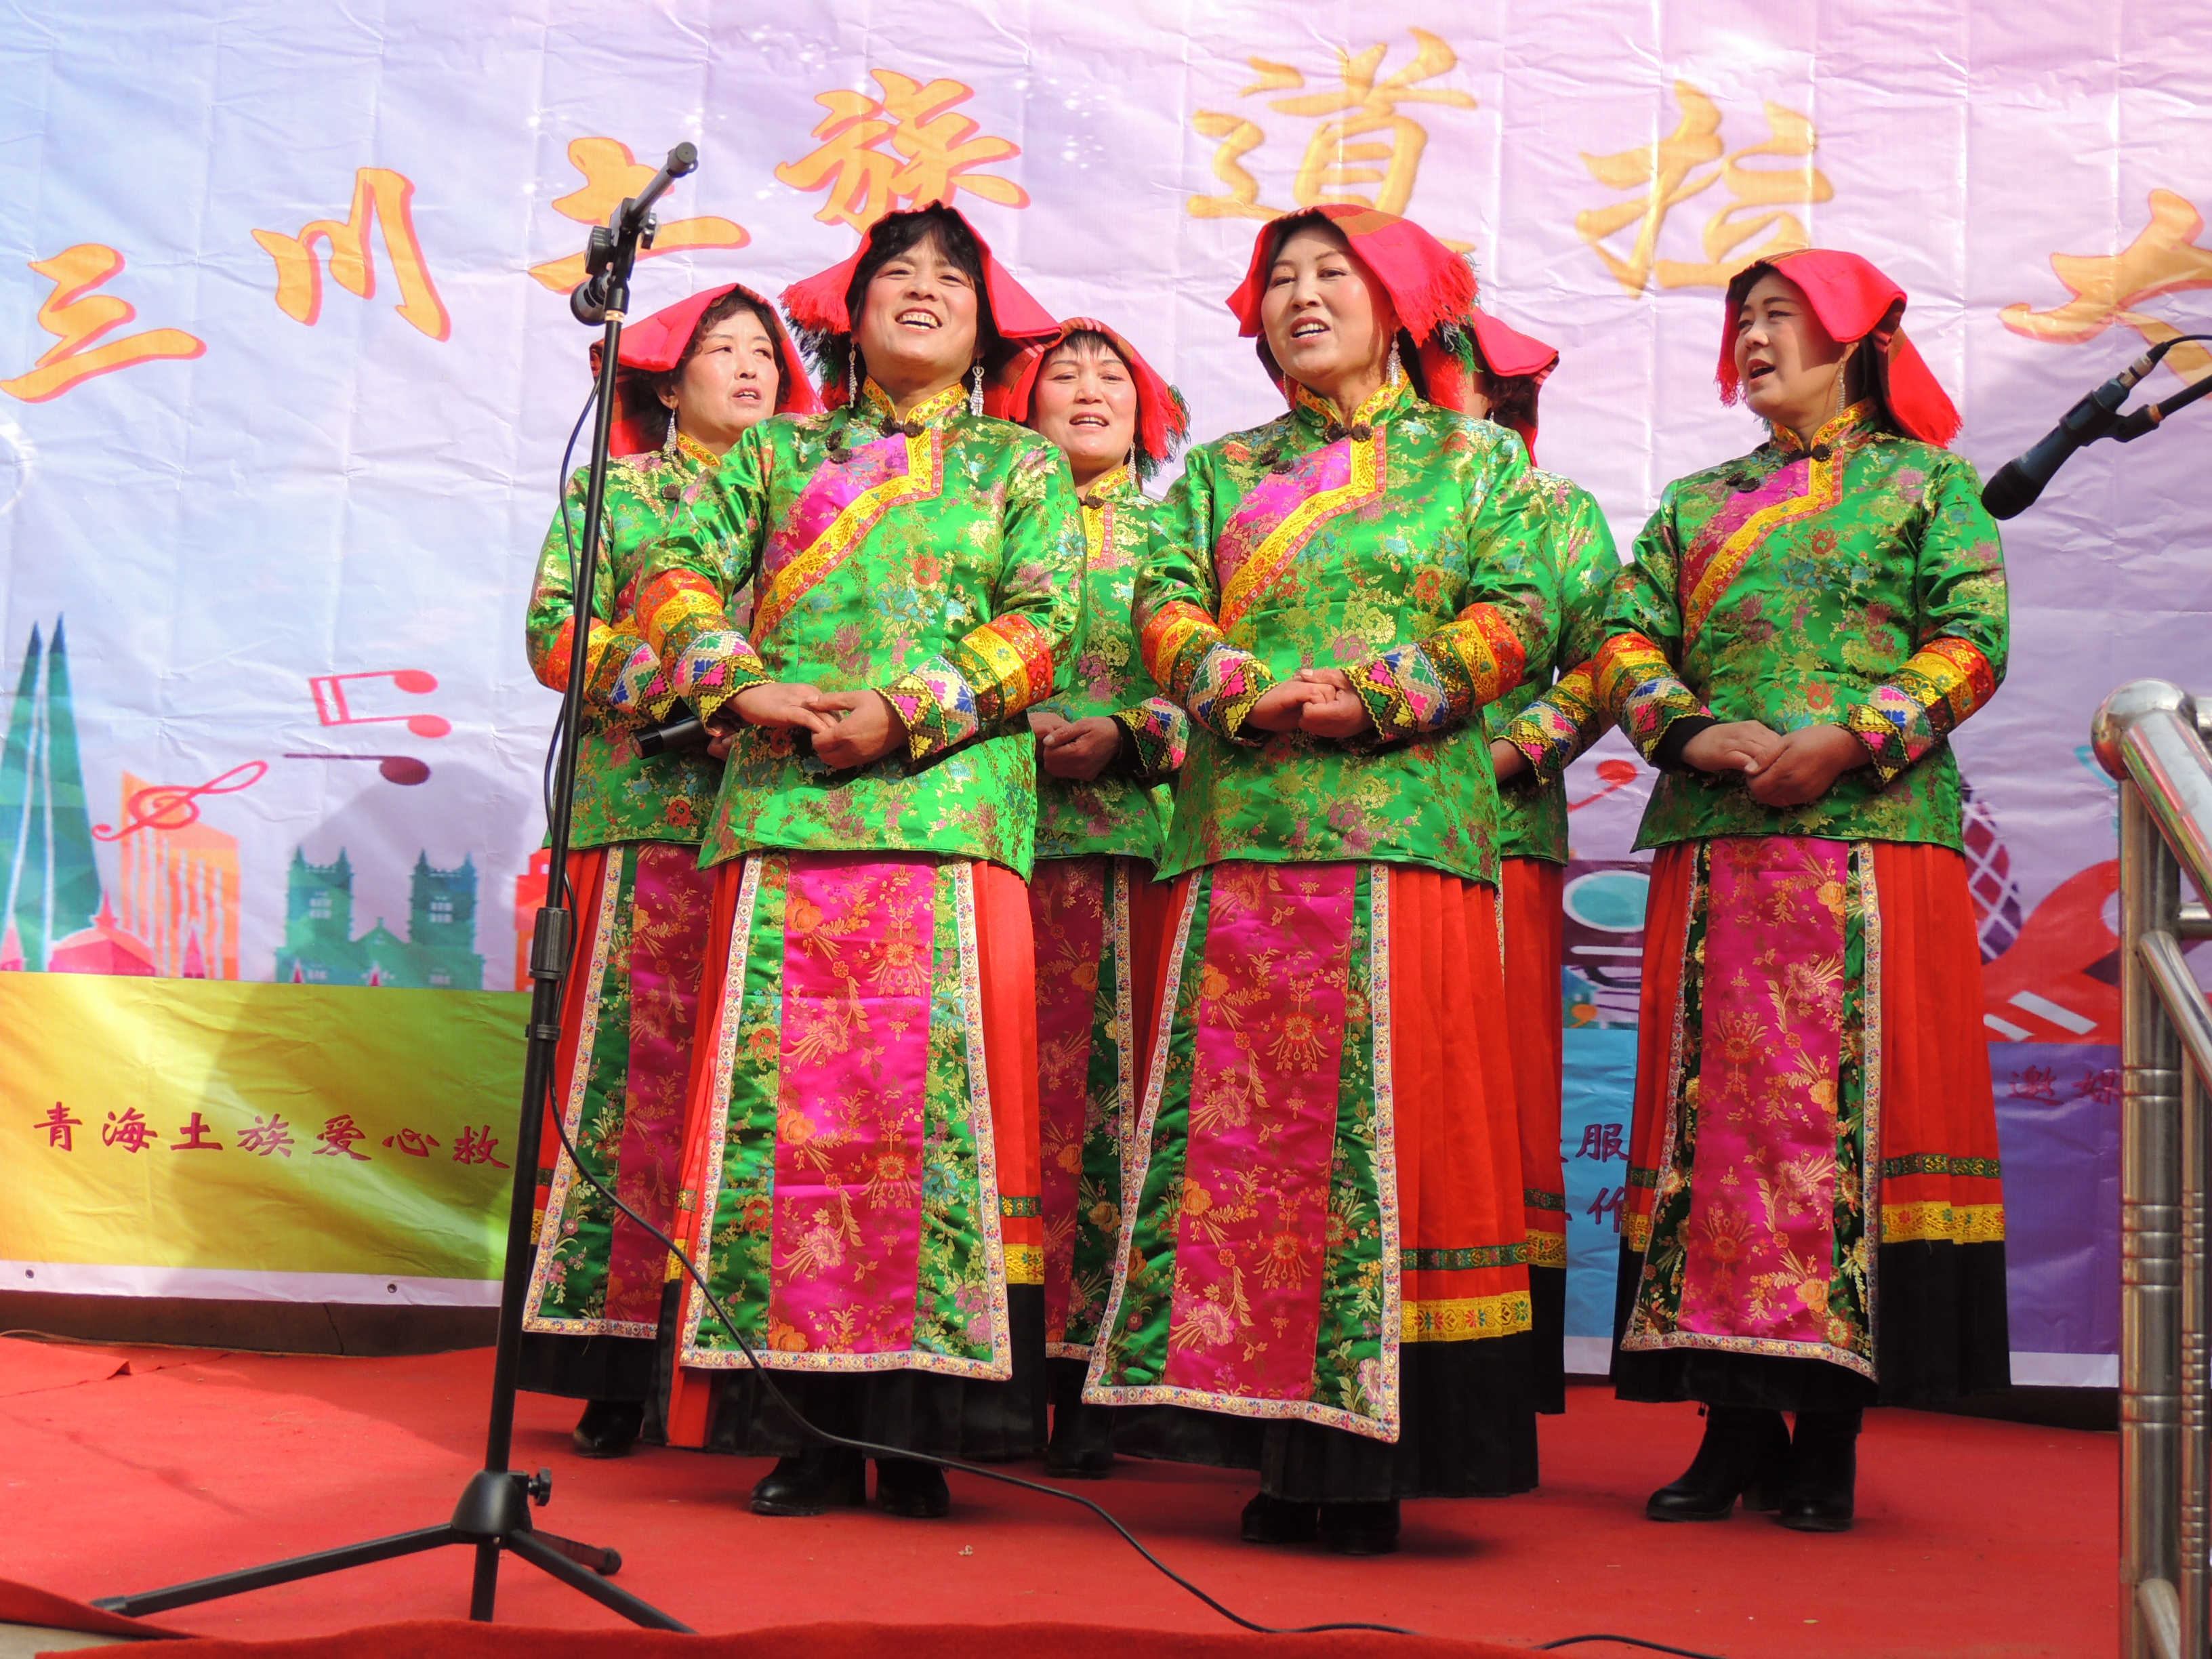 青海民和"道拉"唱响土族大院汇满三川传土族文化